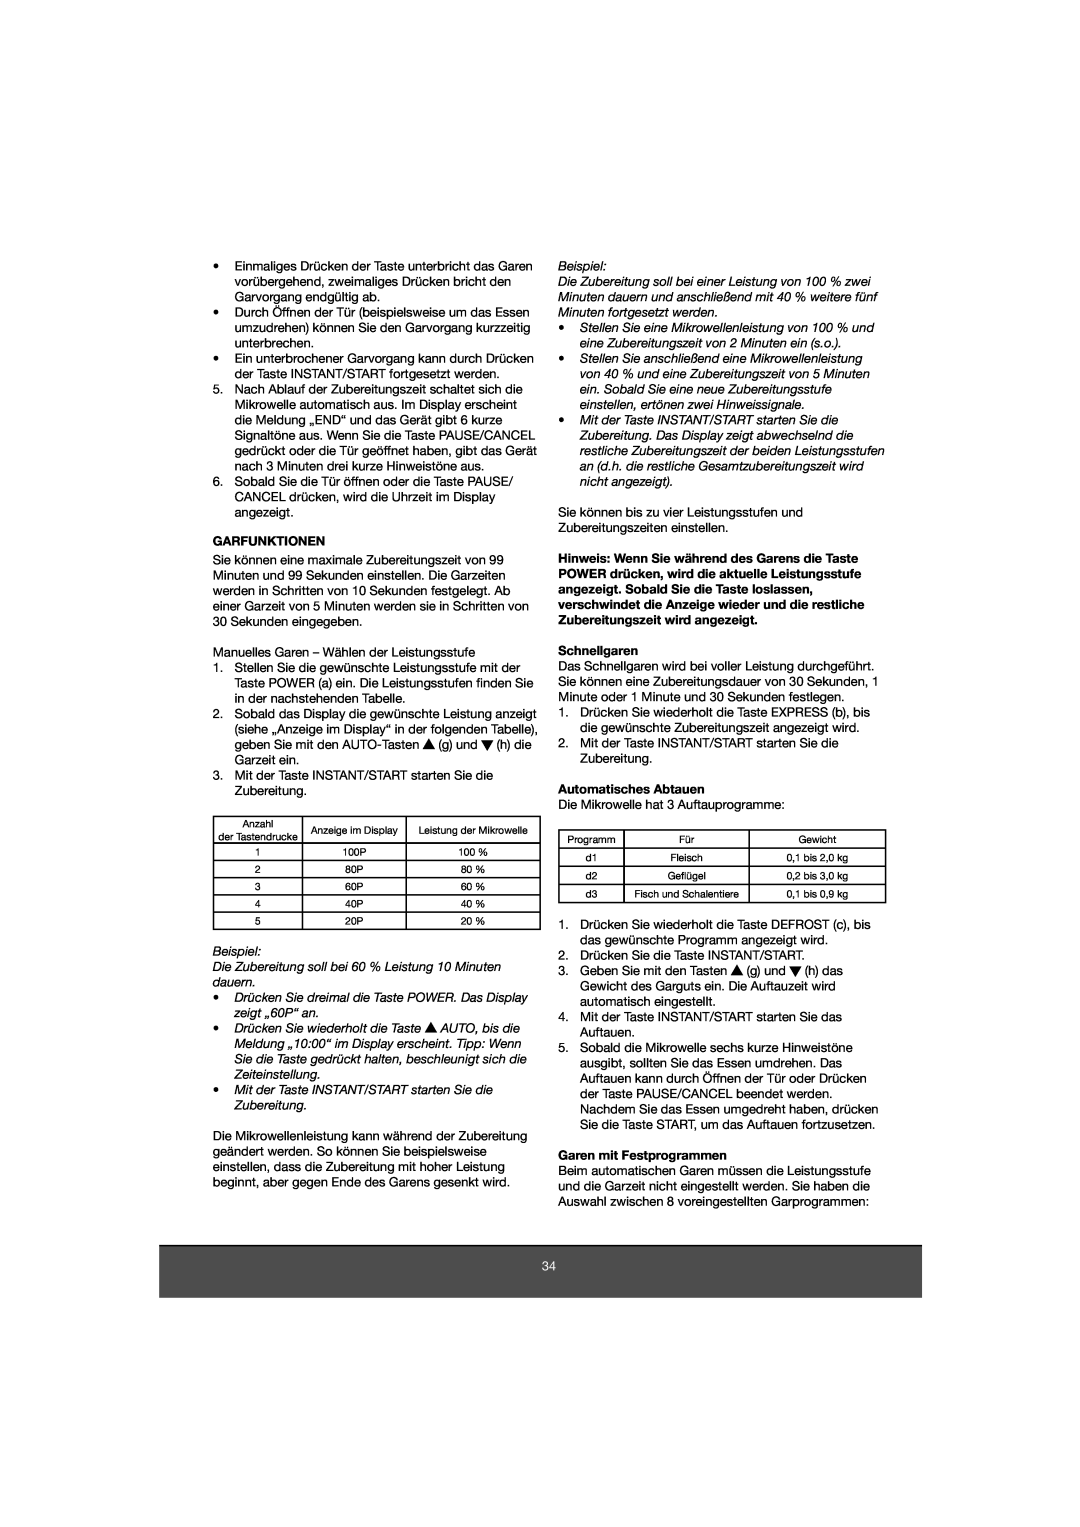 Melissa 653-081 manual Garfunktionen, Schnellgaren, Automatisches Abtauen, Garen mit Festprogrammen 